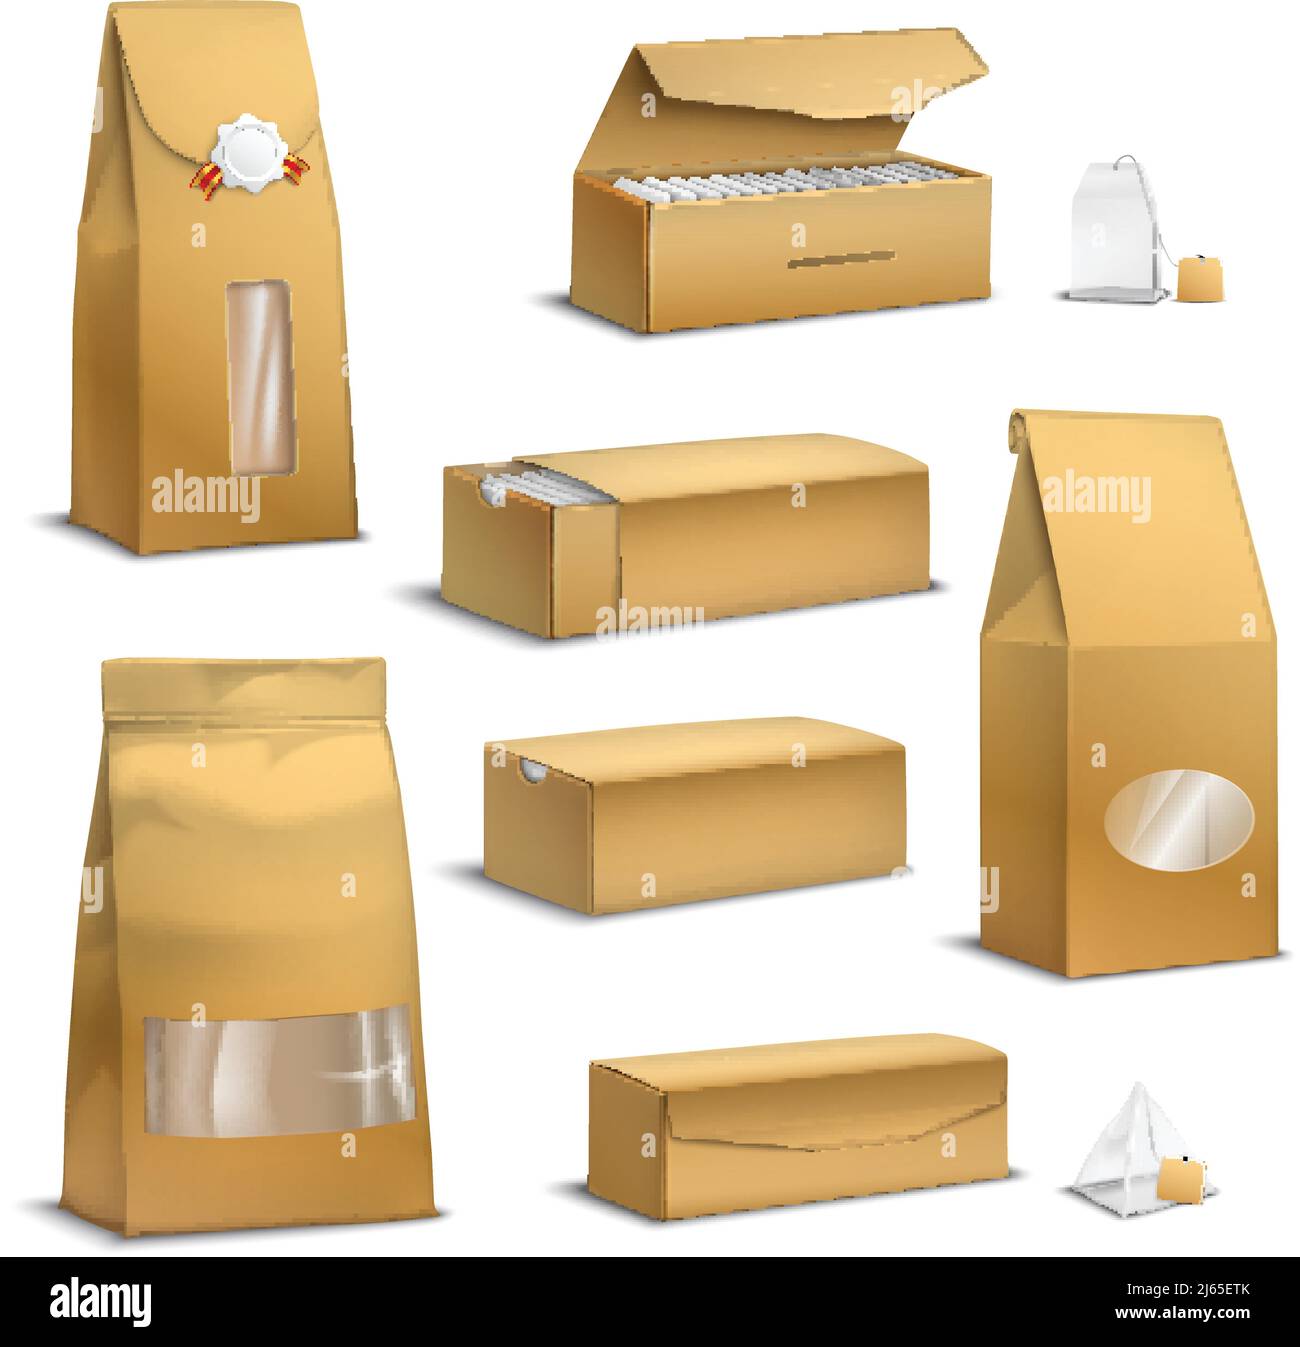 Sacchetti marroni di carta kraft sacco e confezioni di foglie sciolte scatole pacchetti immagine vettoriale isolata realistica insieme Illustrazione Vettoriale